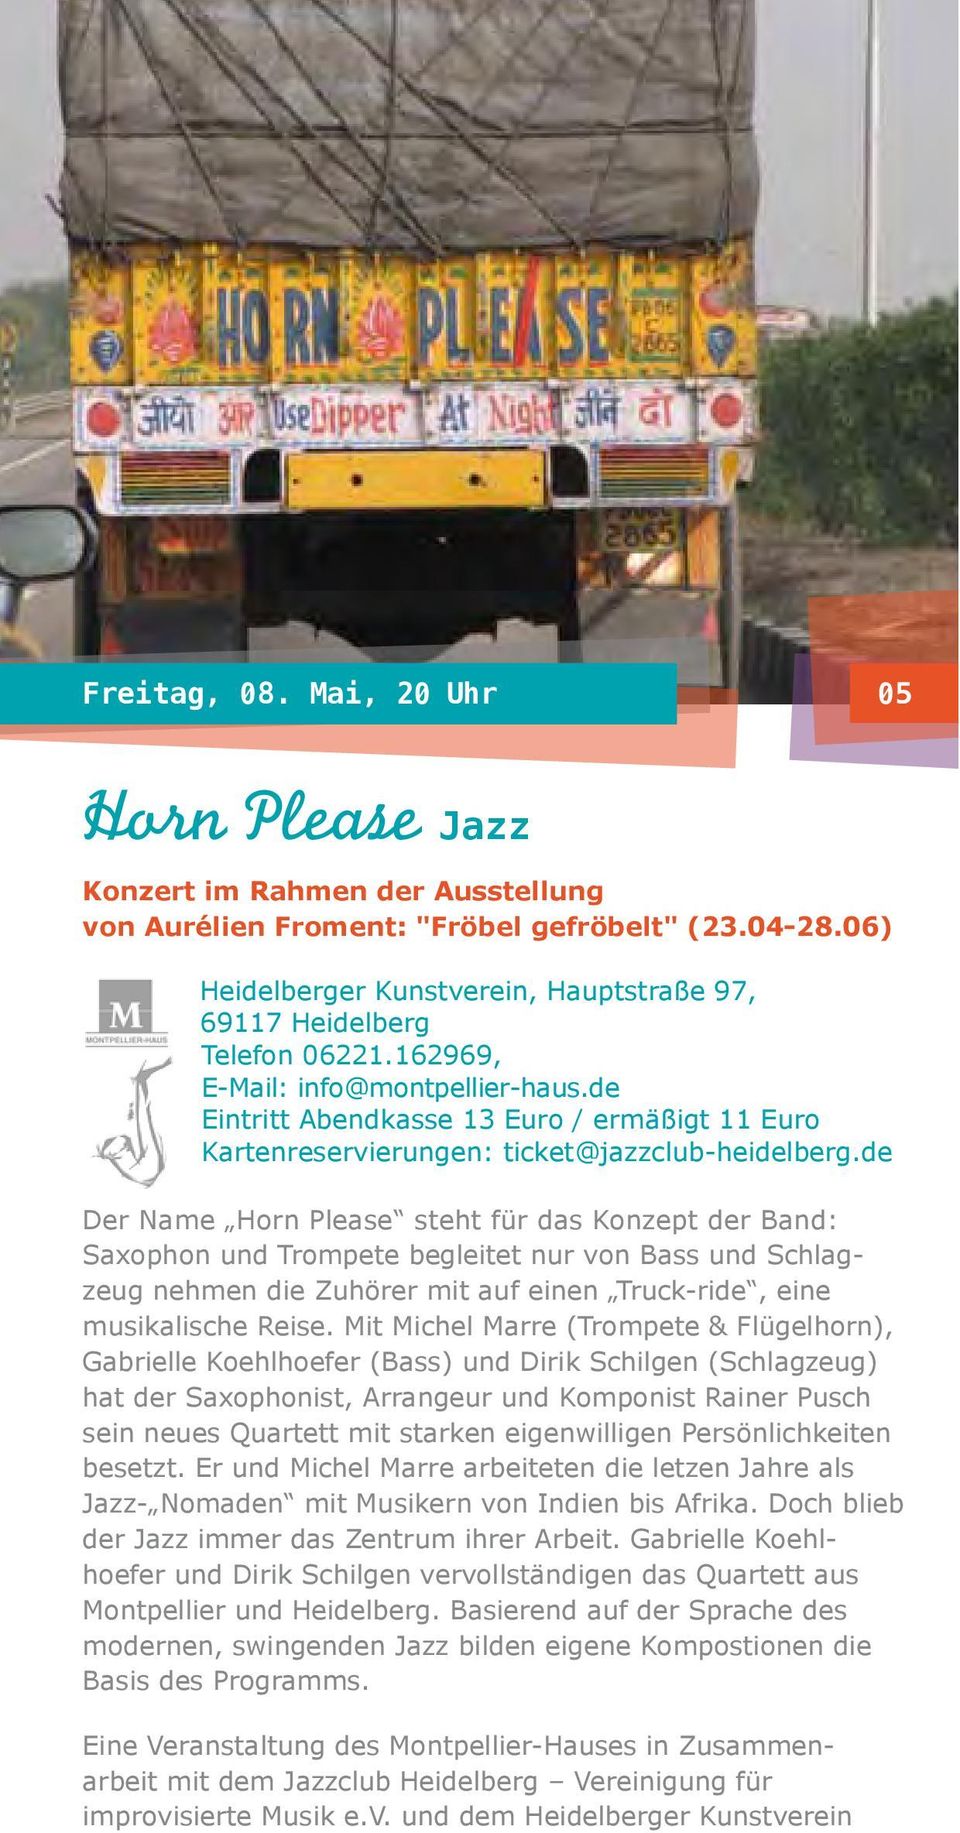 de Eintritt Abendkasse 13 Euro / ermäßigt 11 Euro Kartenreservierungen: ticket@jazzclub-heidelberg.